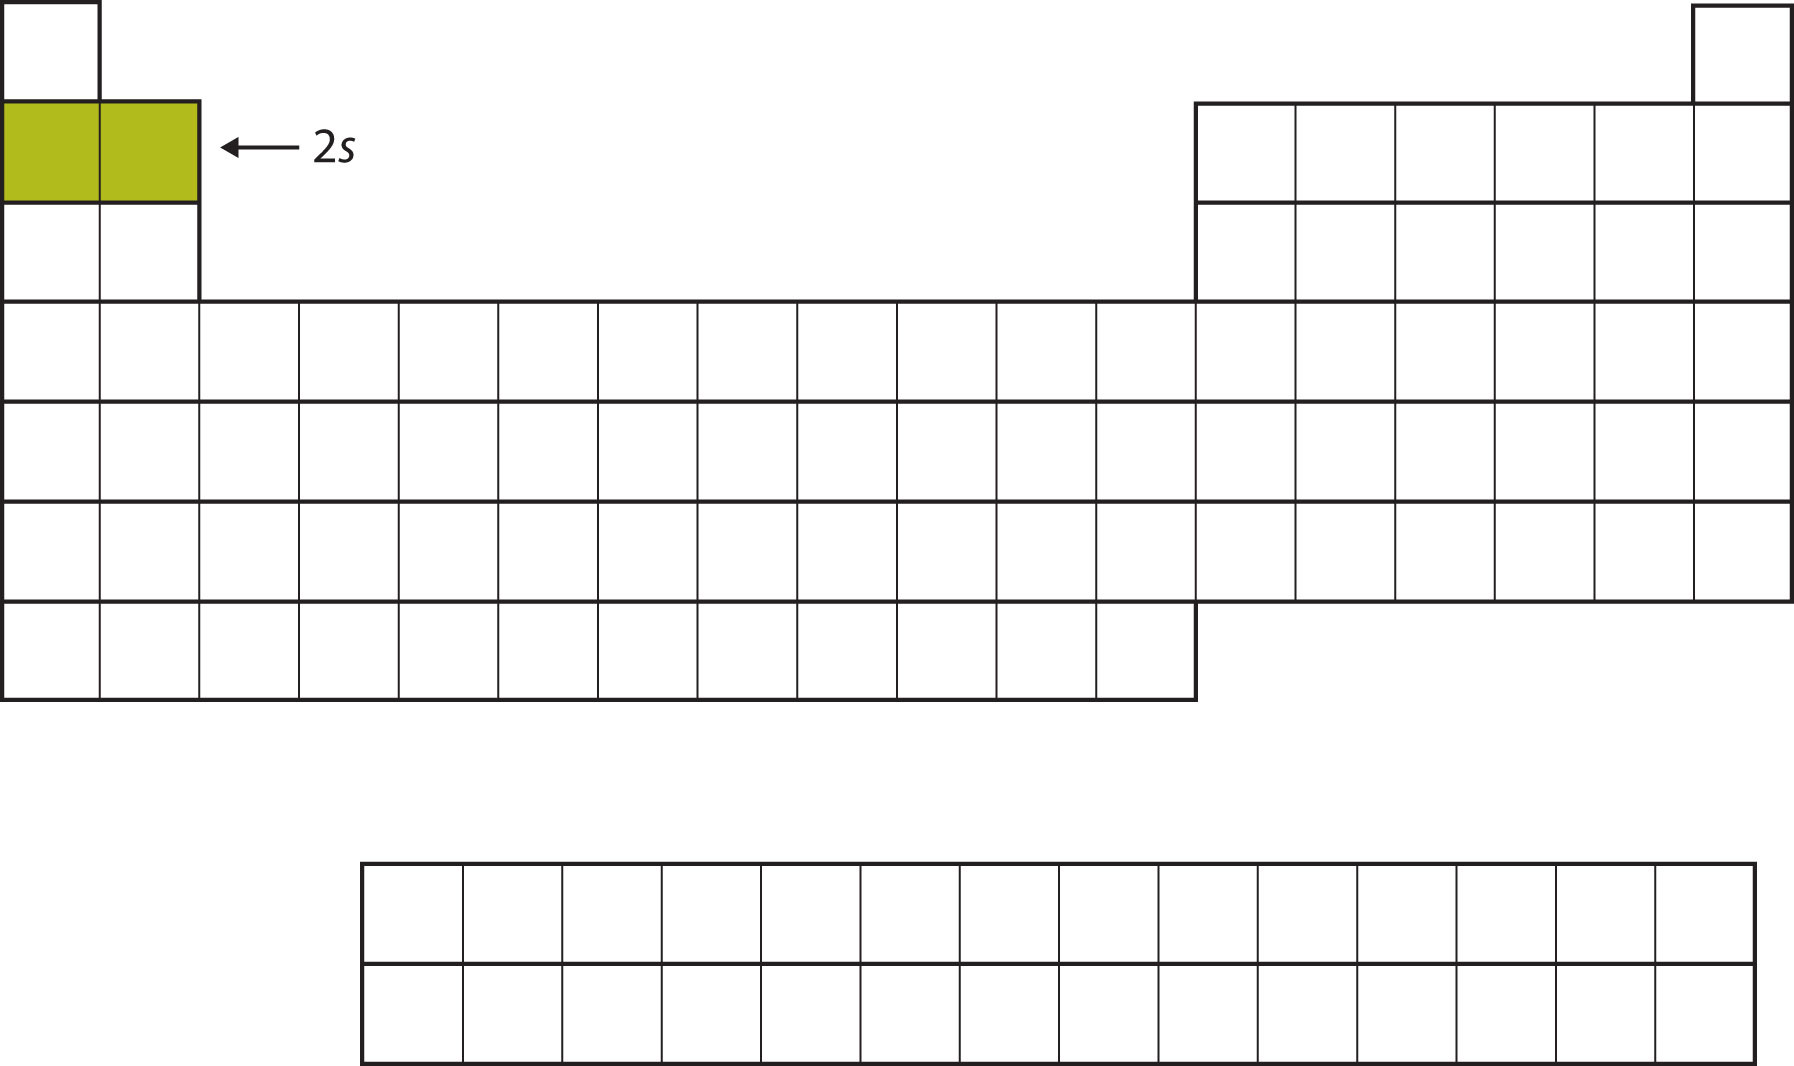 Tabla periódica vacía, con 2 cuadrados en la segunda fila a la izquierda rellenados en un color verde mostaza.